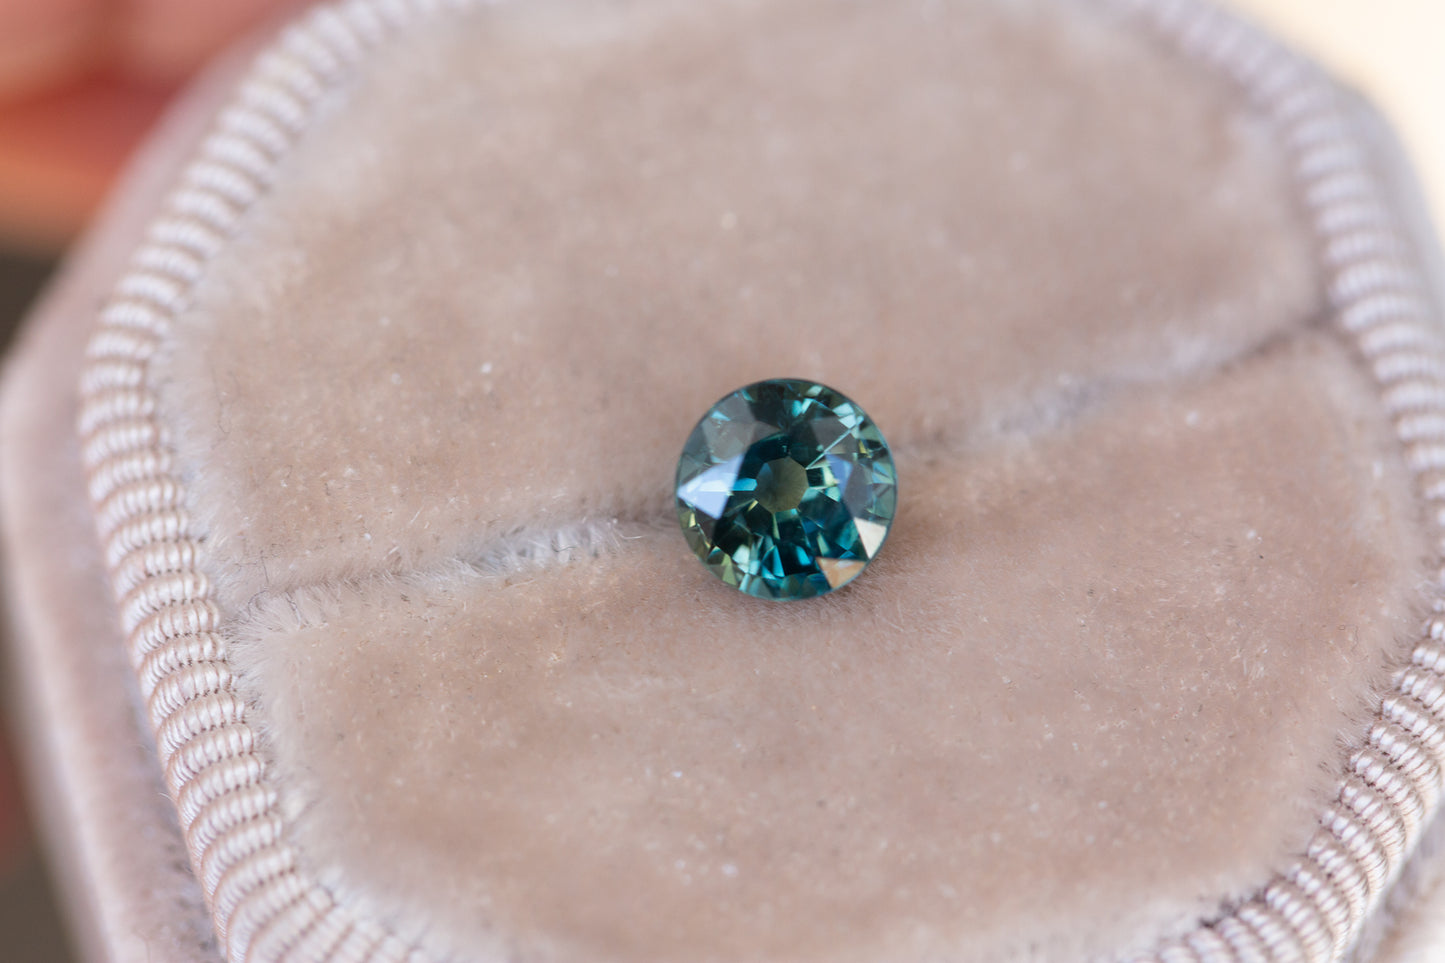 1.5ct round blue green sapphire